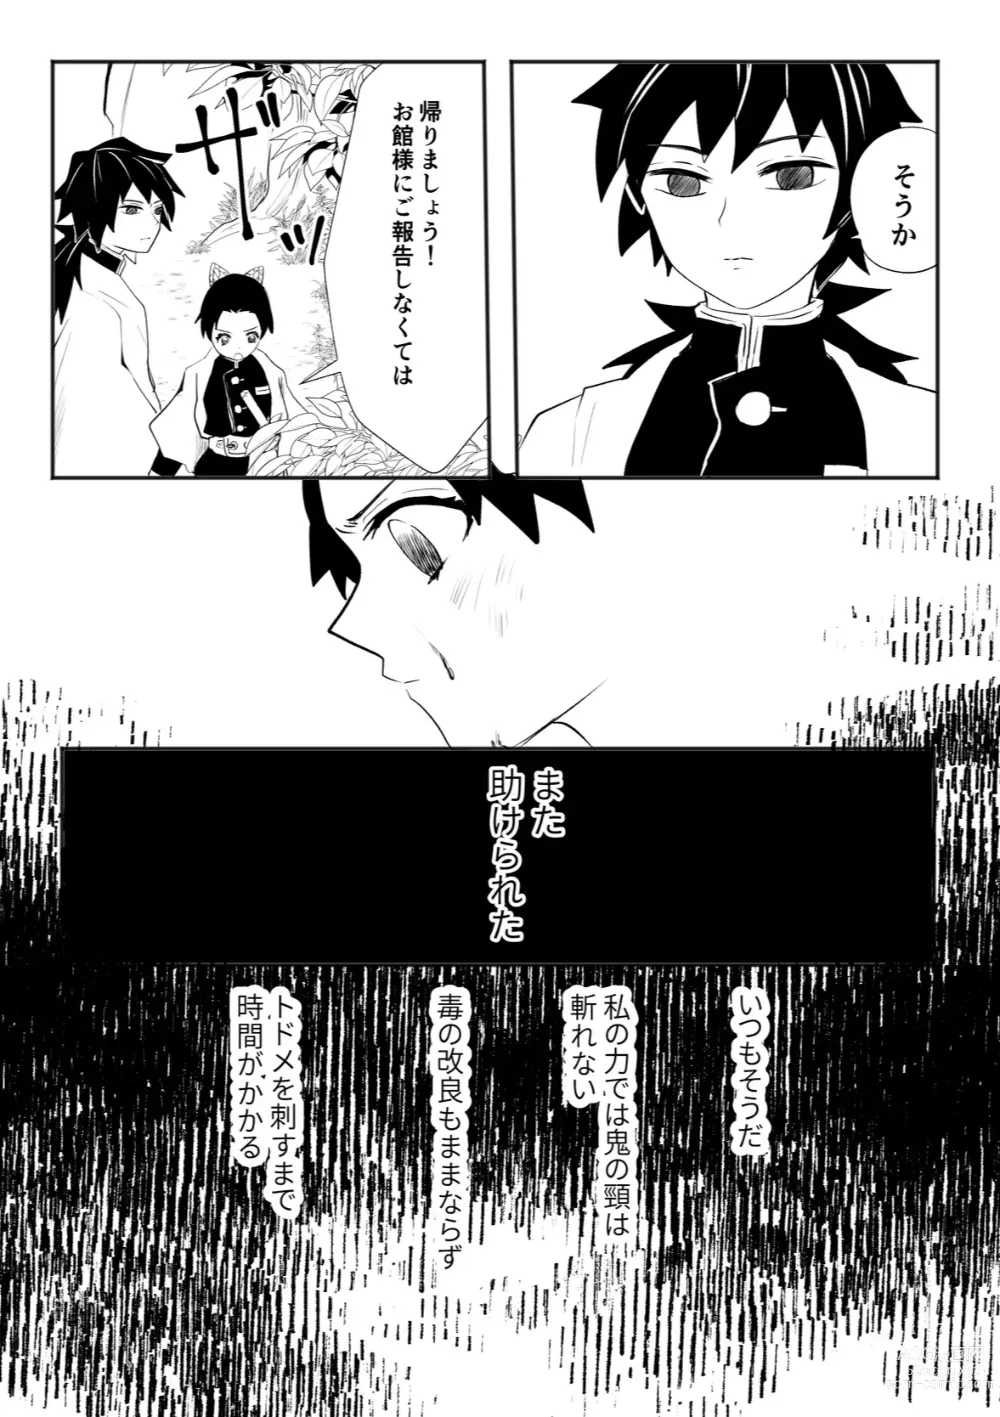 Page 3 of doujinshi Hodokete Tokeru